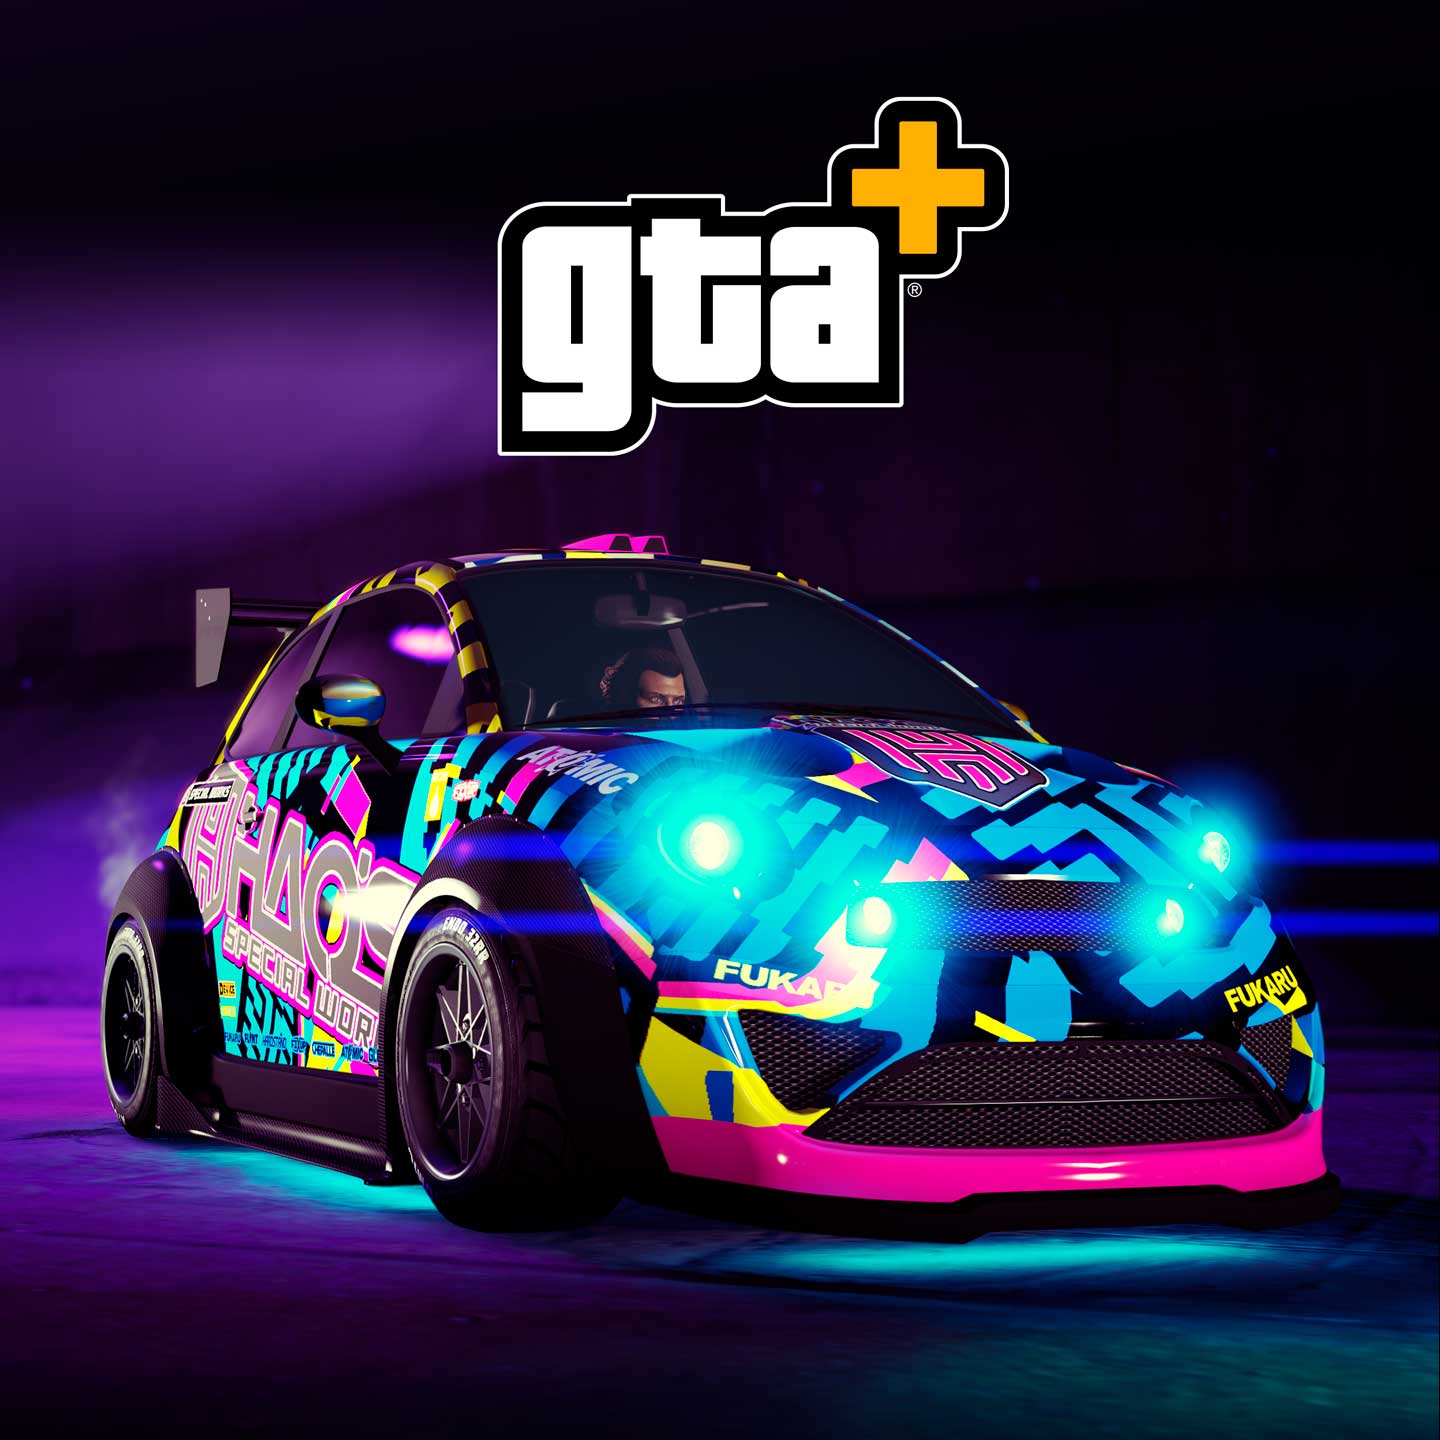 Rockstar da Depressão - Inspirações dos carros esportivos de GTA III.  Abrahão, Editor